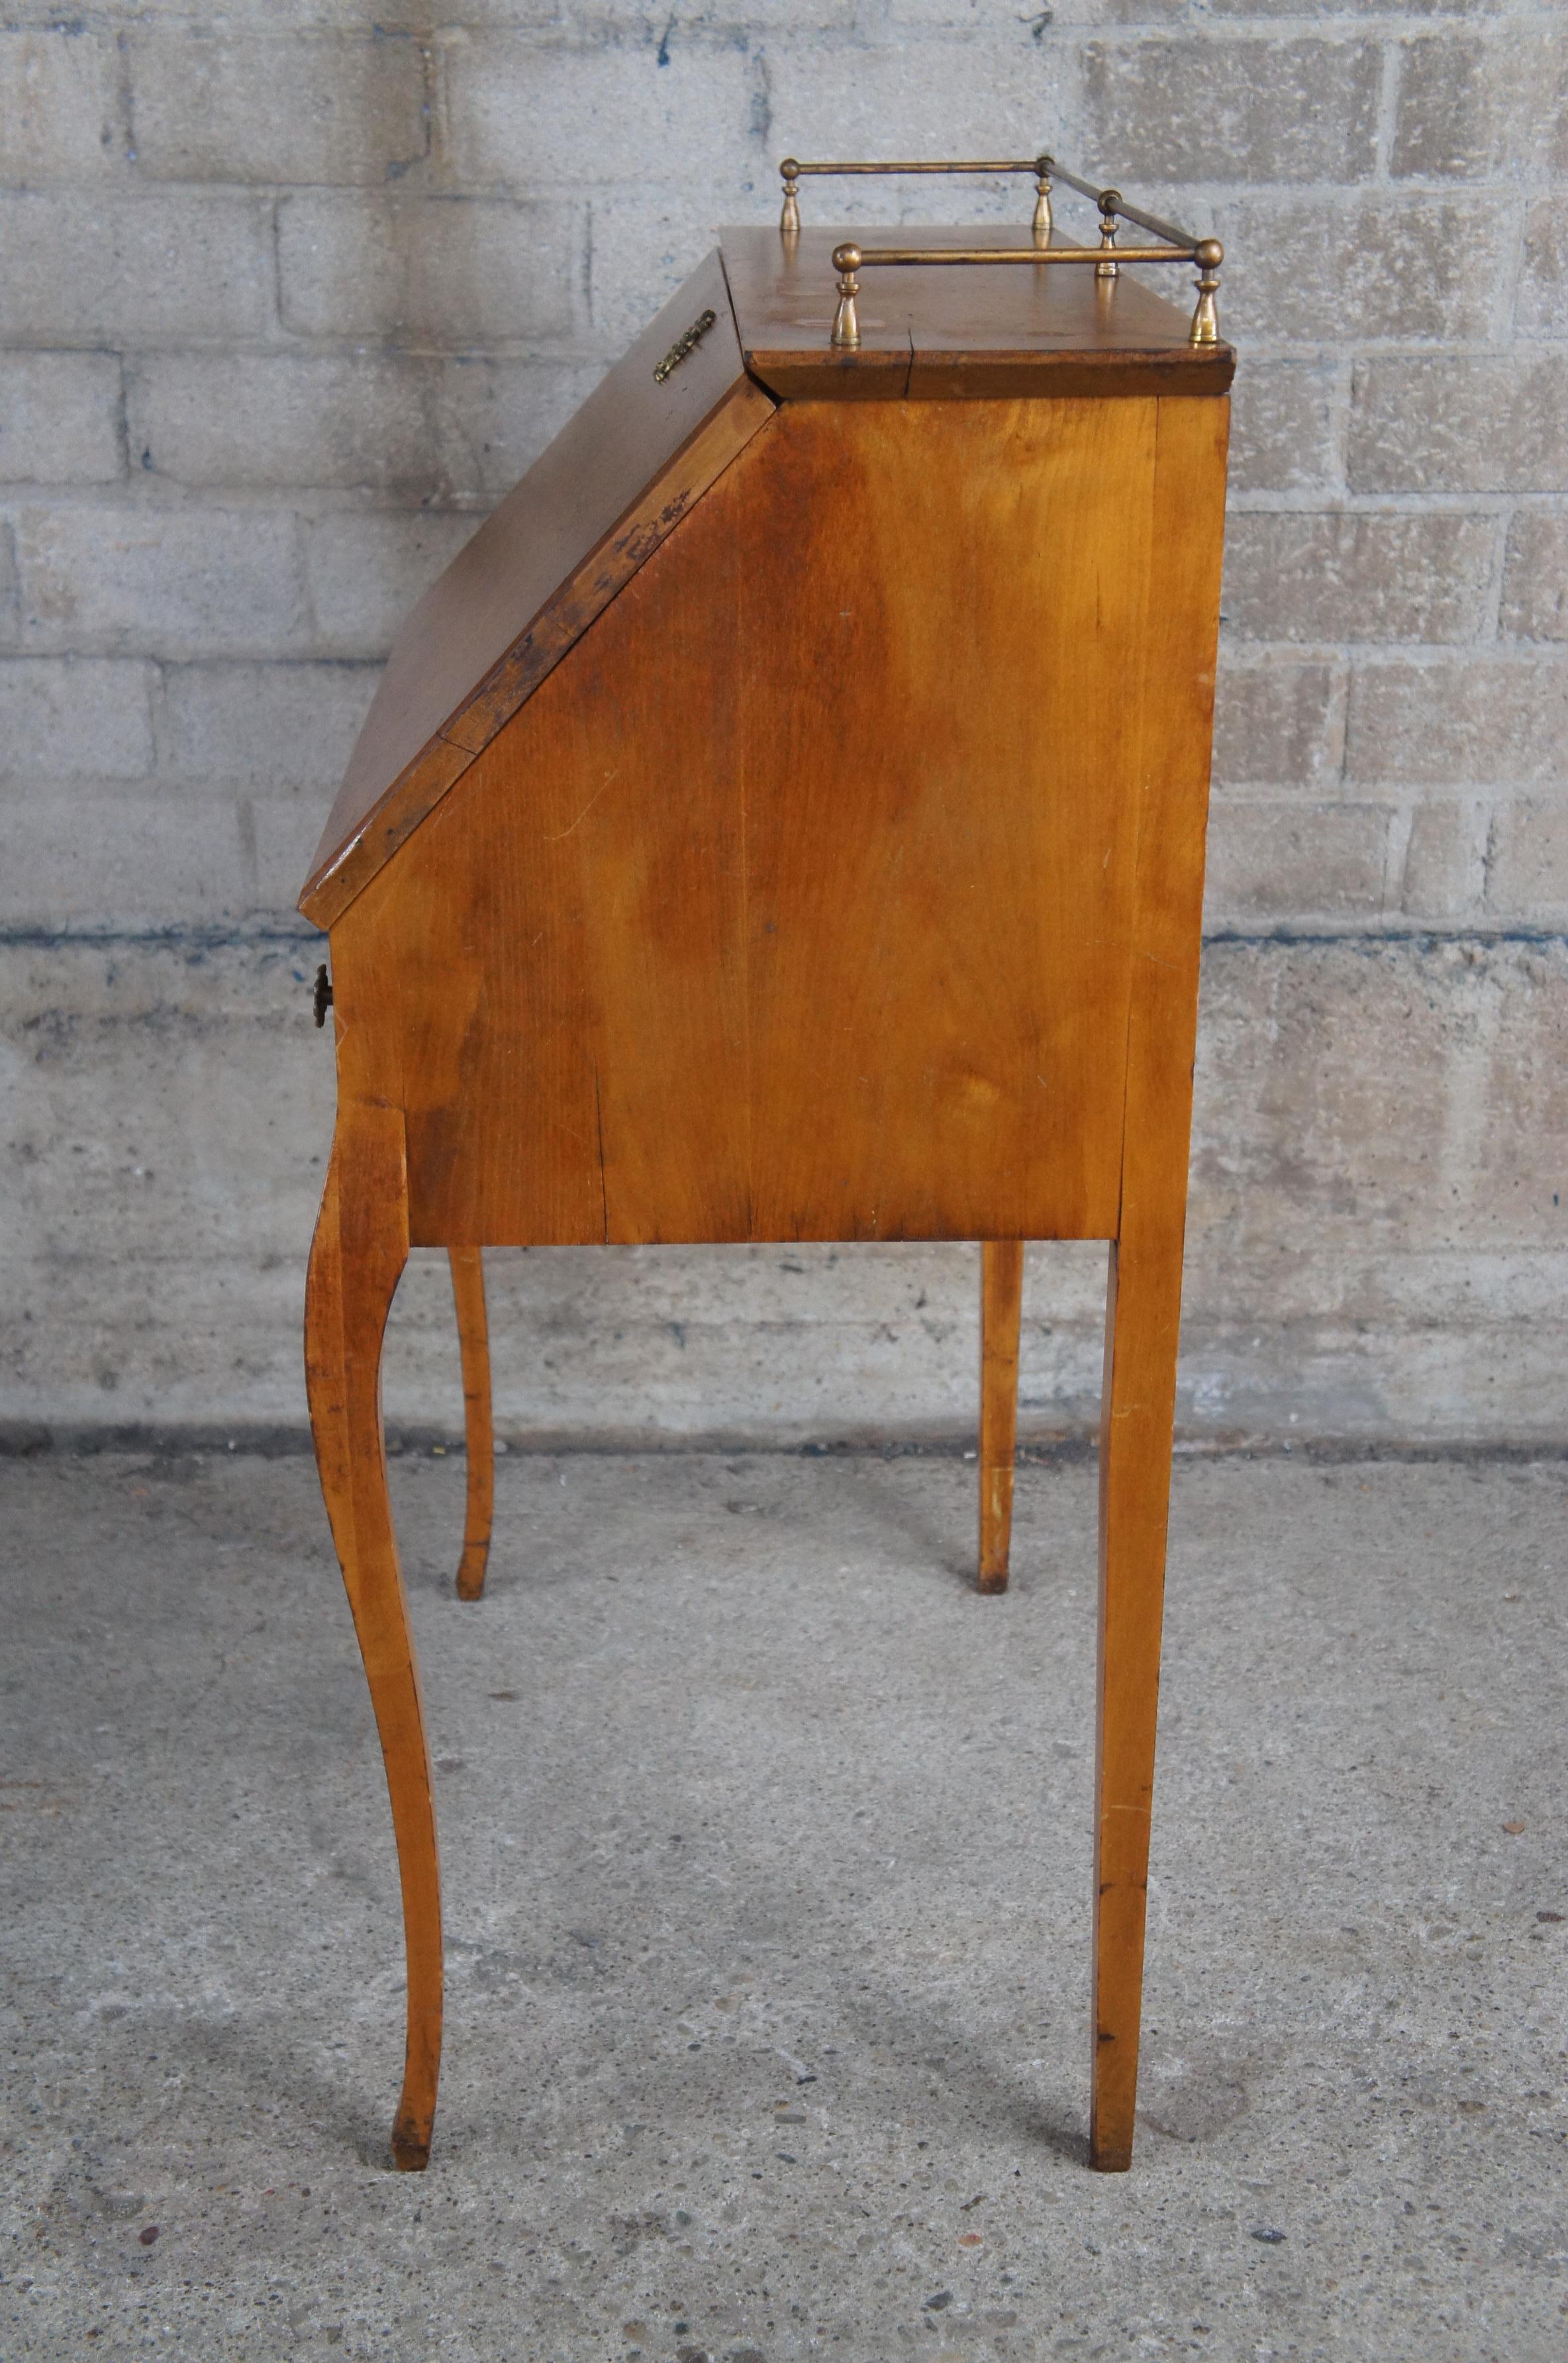 Antique Birdseye Maple Drop Front Brass Gallery Secretary Writing Desk 39